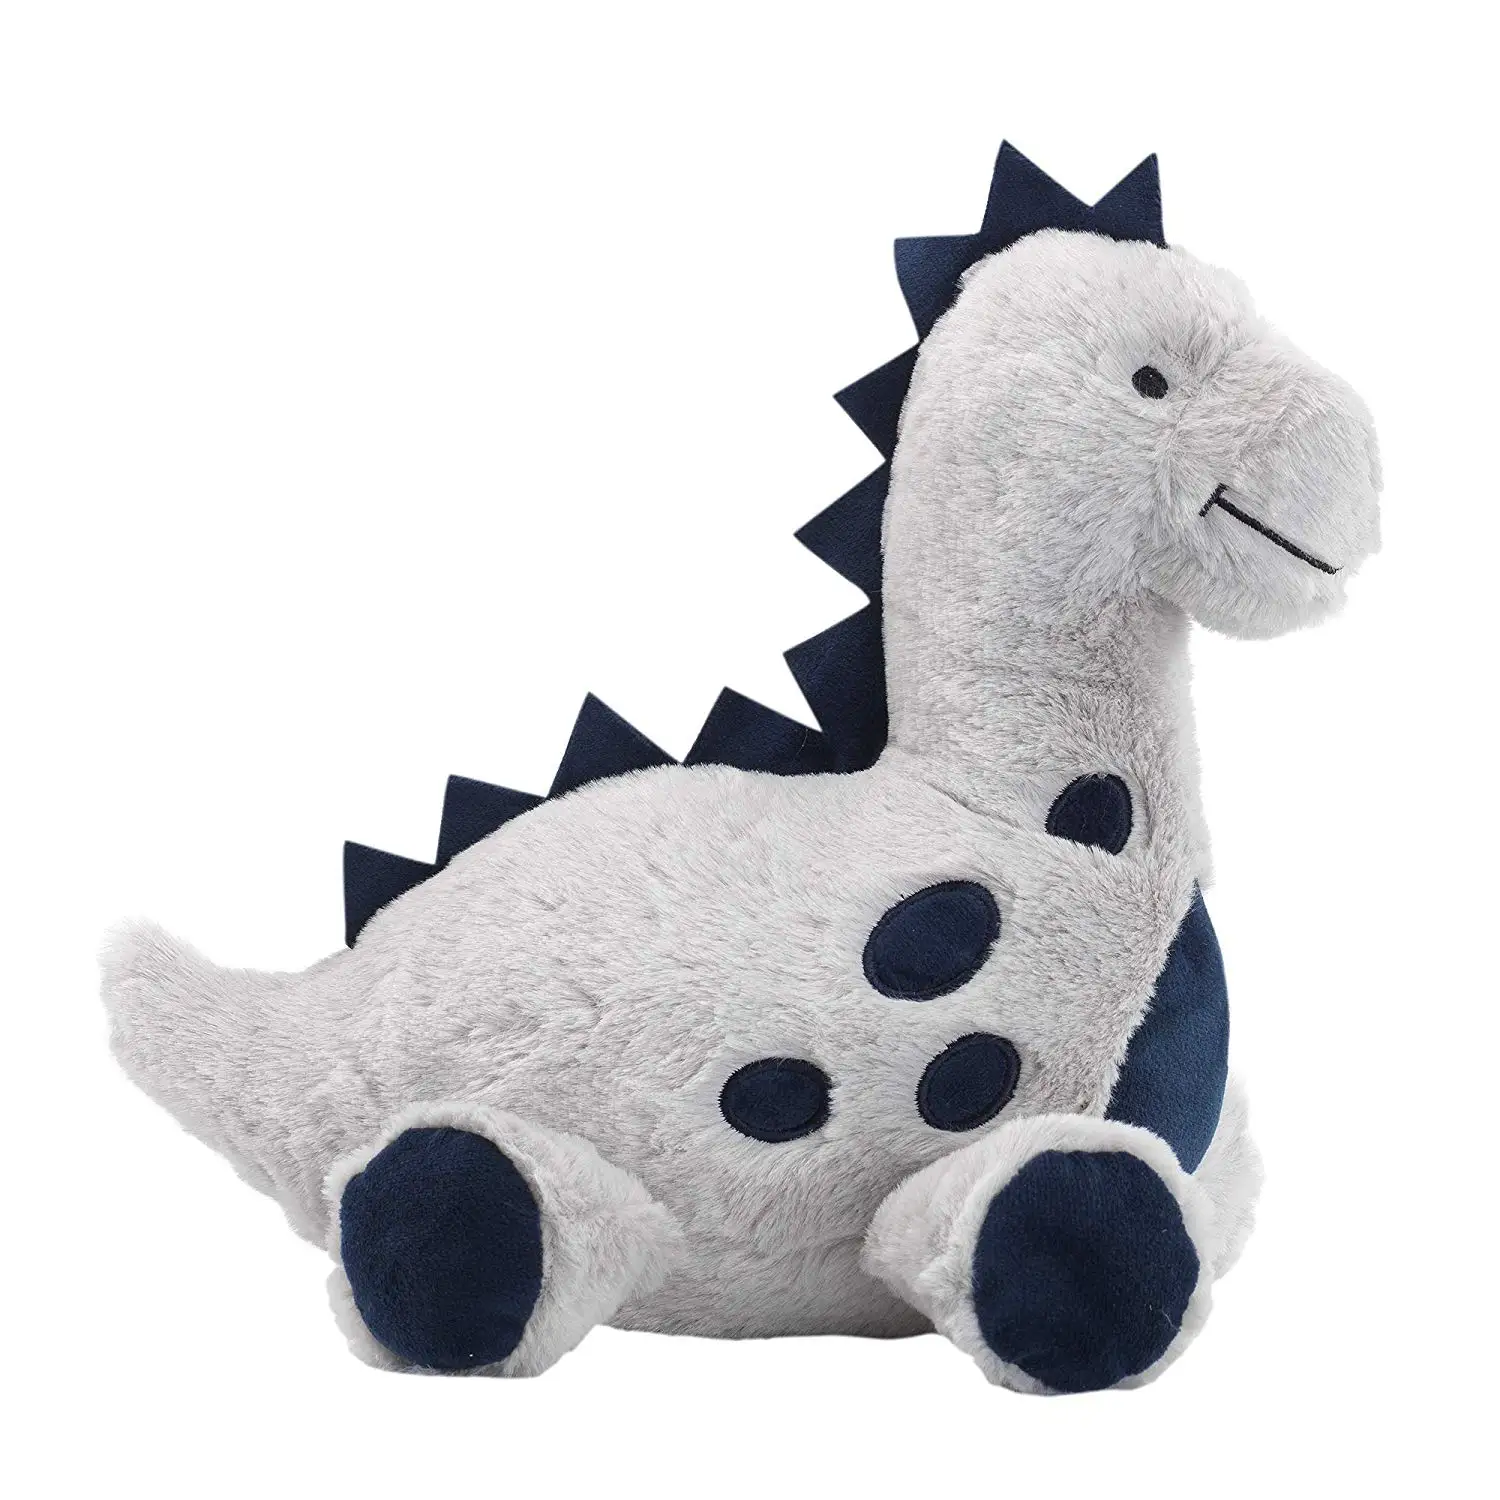 Индивидуальная детская мягкая игрушка животное динозавр синий и серый плюшевый динозавр